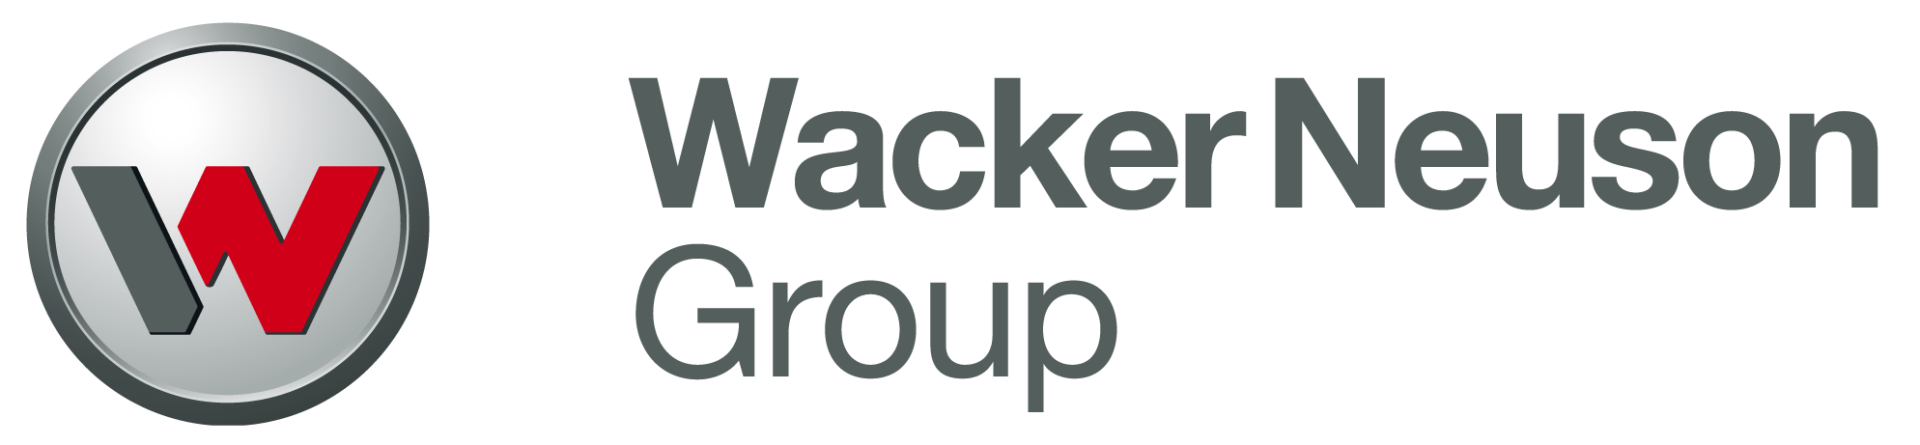 Makersan Client wacker neunson logo